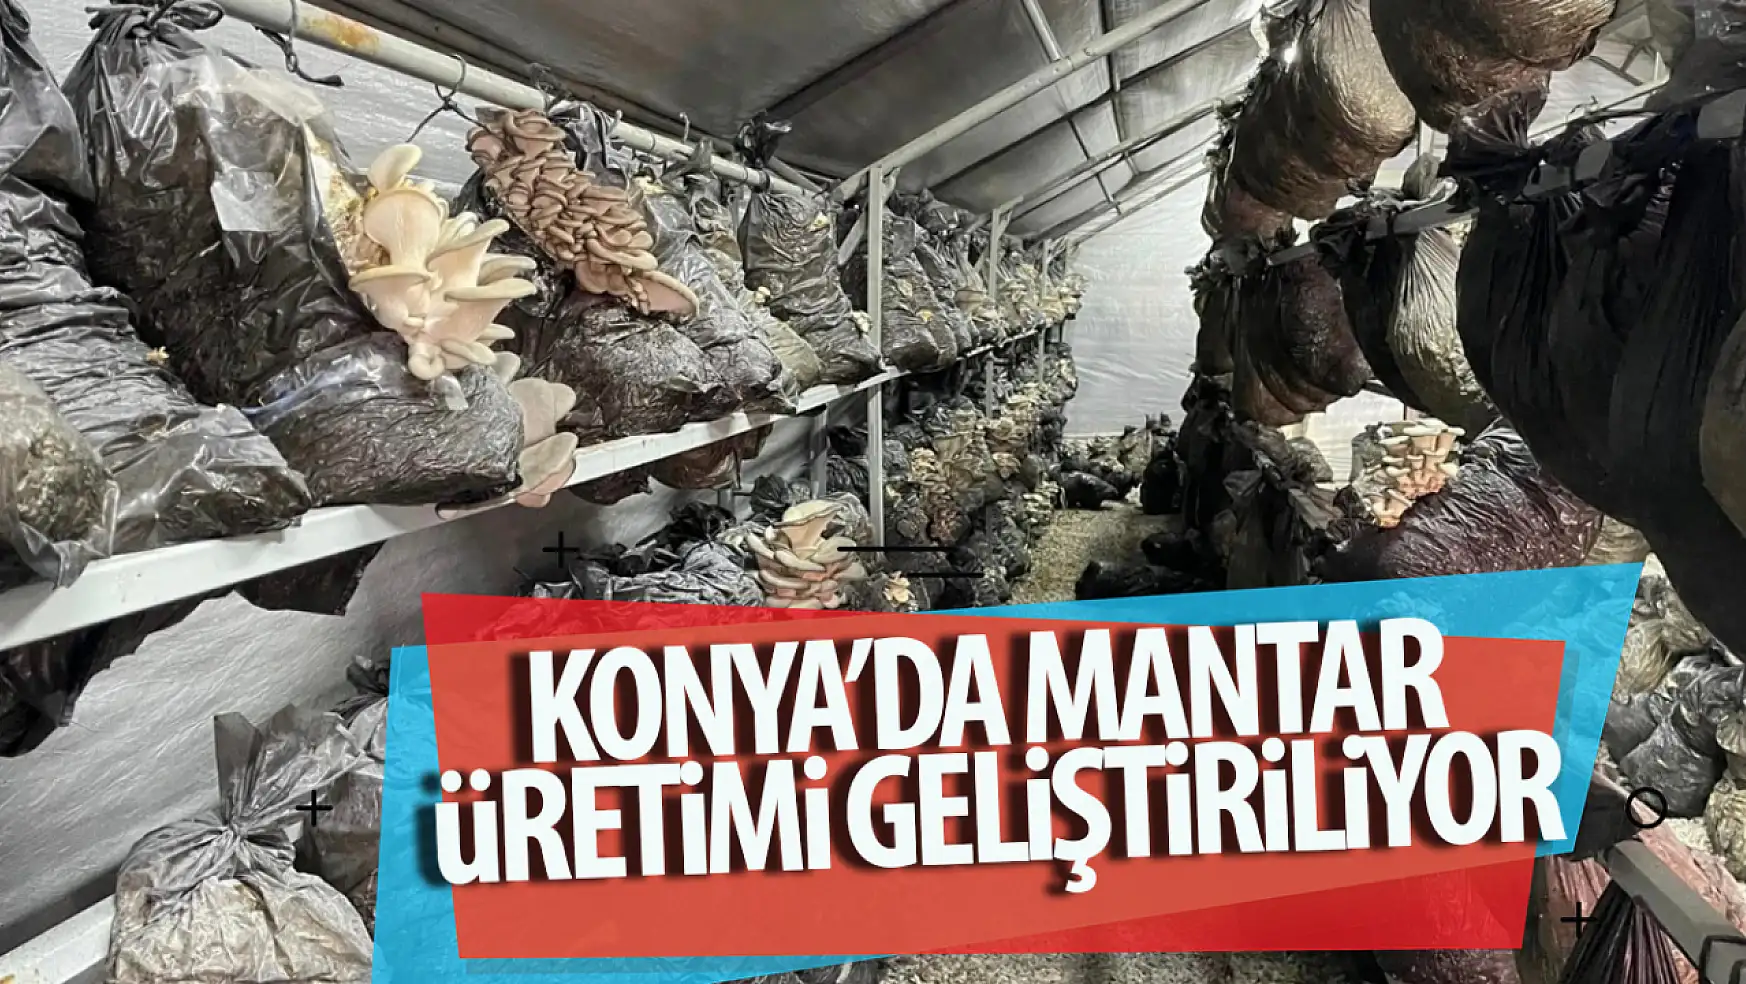 Konya'da mantar üretimi geliştiriliyor!